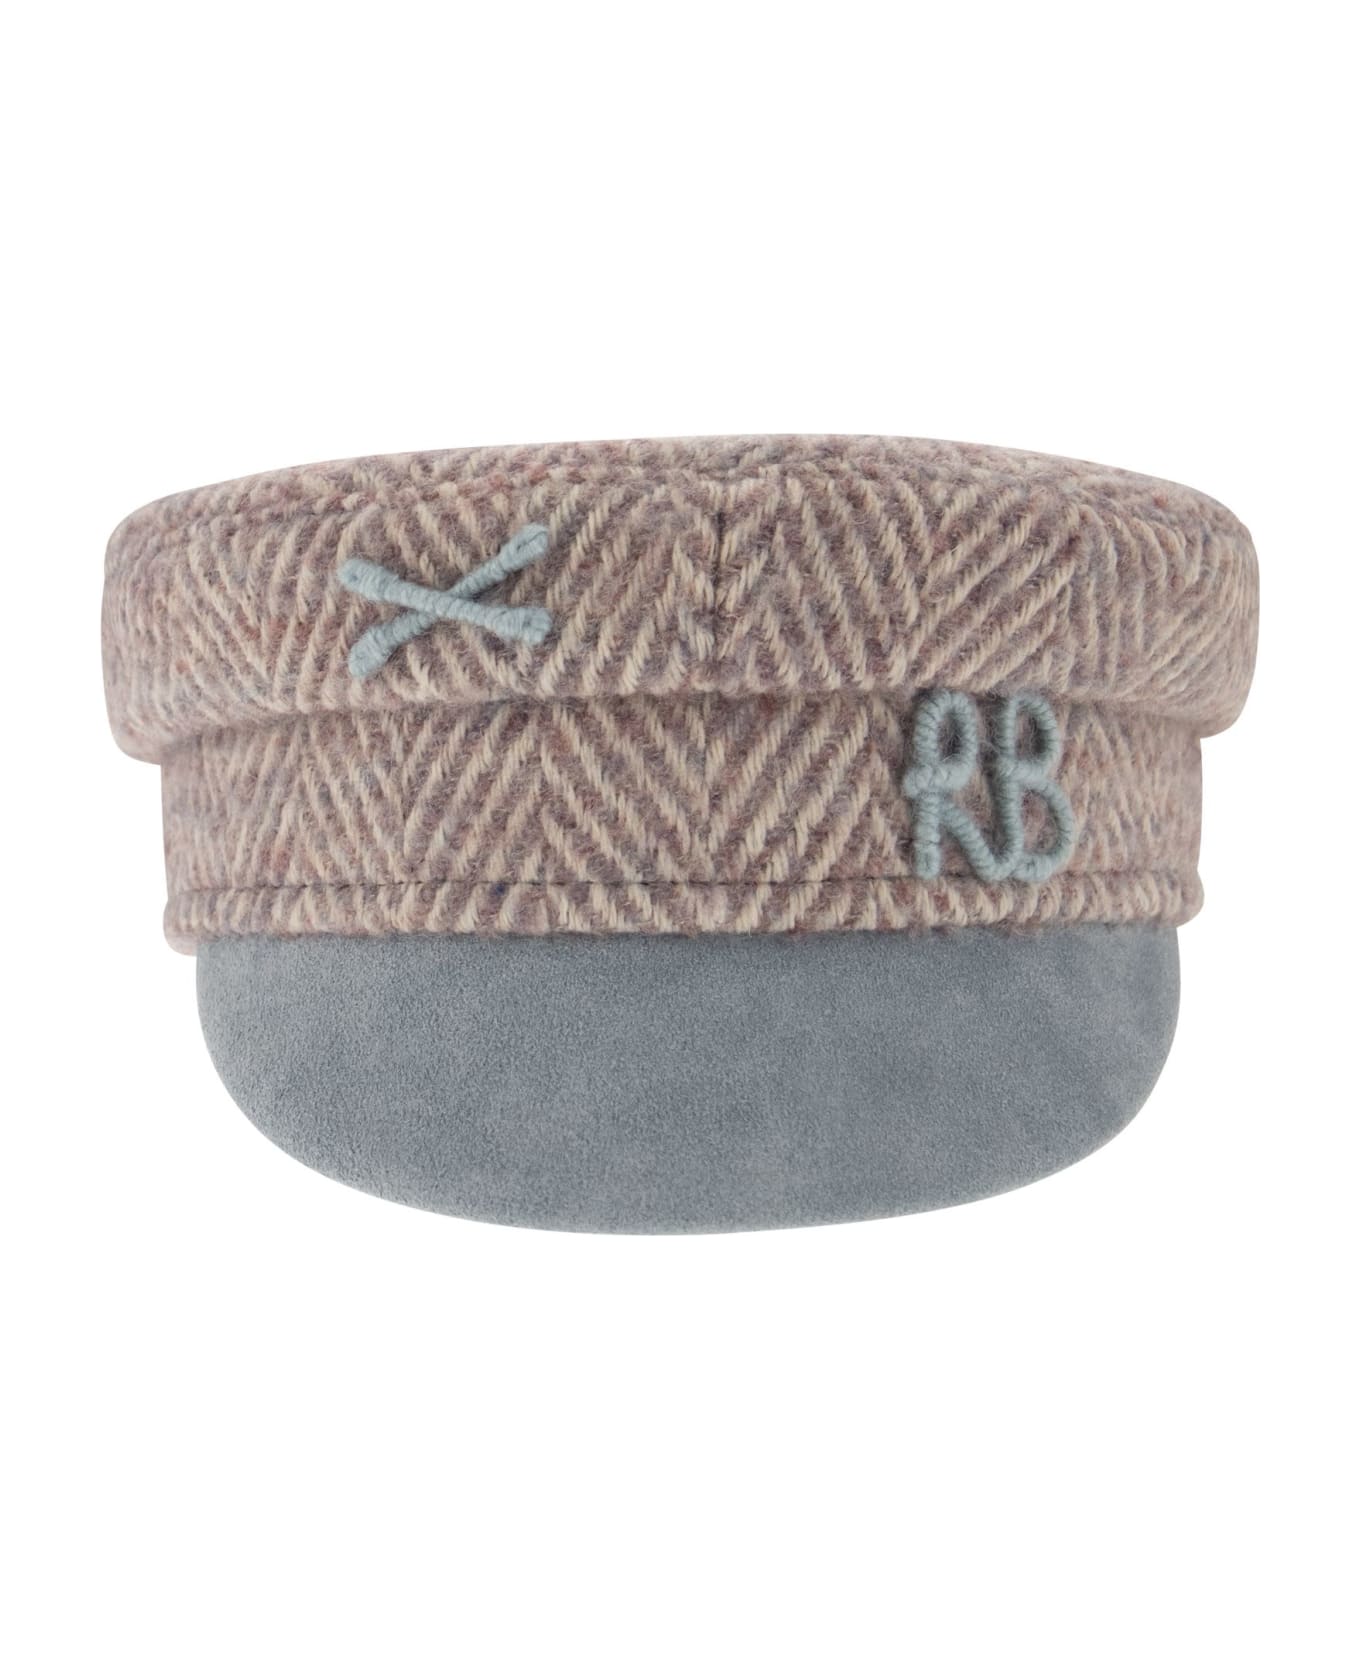 Ruslan Baginskiy Baker Boy - Wool Cap - Beige/light Blue 帽子